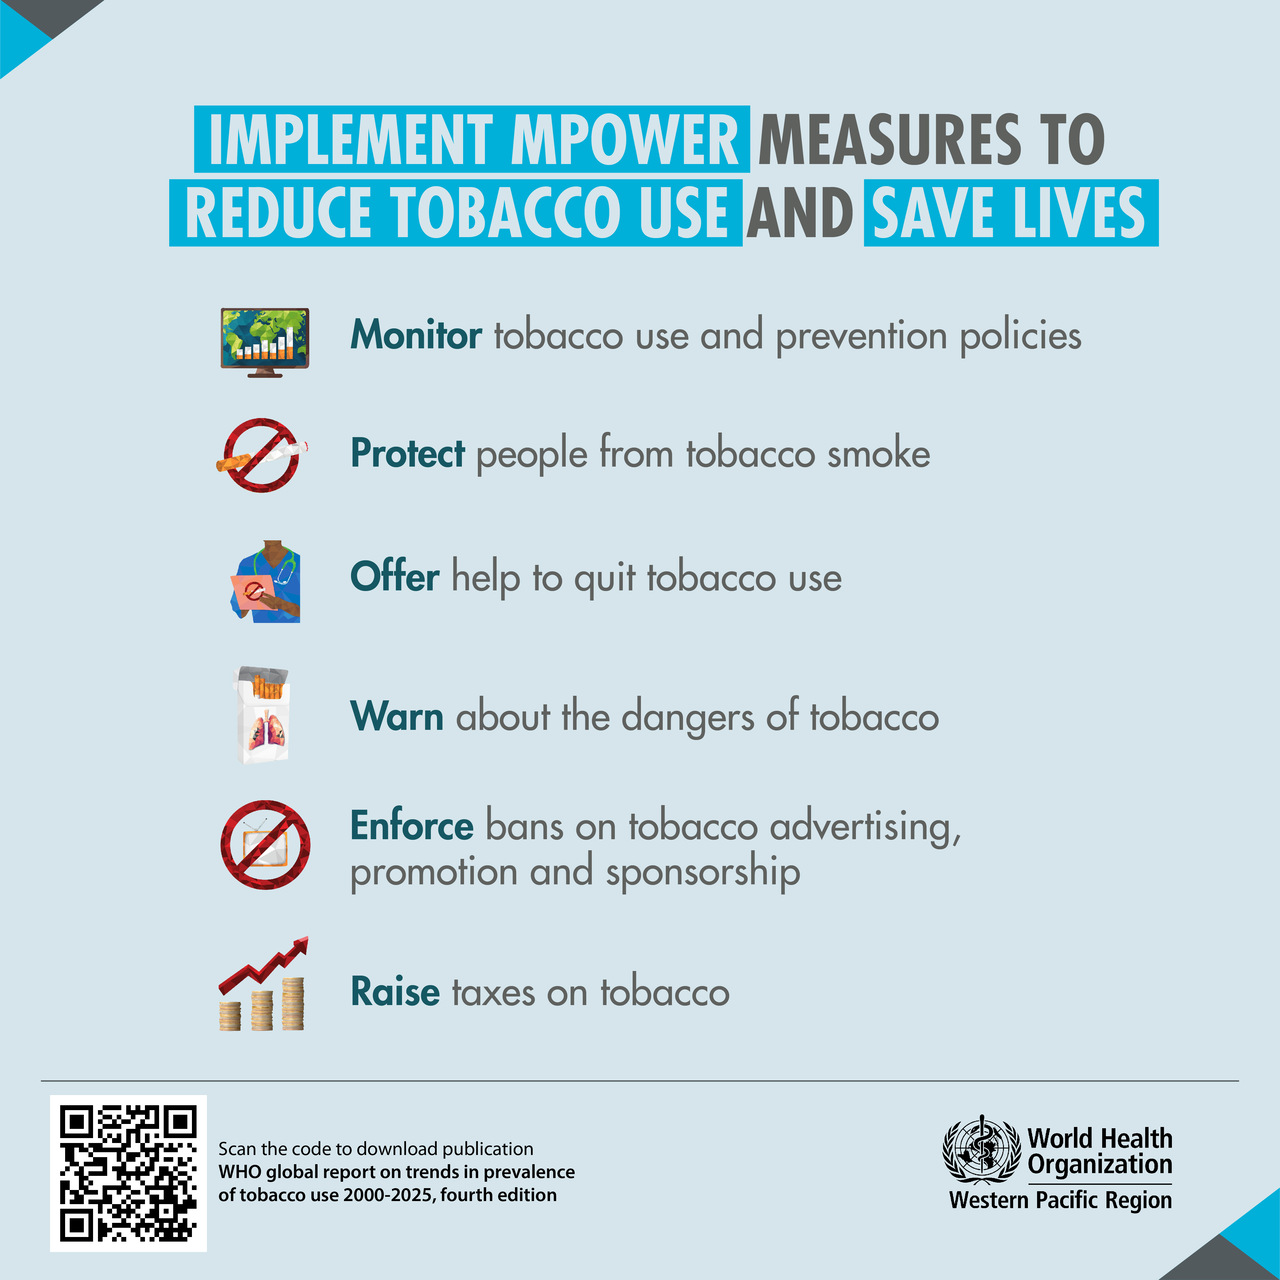 Tabak: fajčenie stále otravuje našu planétu, ale globálne opatrenia na boj proti tomuto fenoménu fungujú